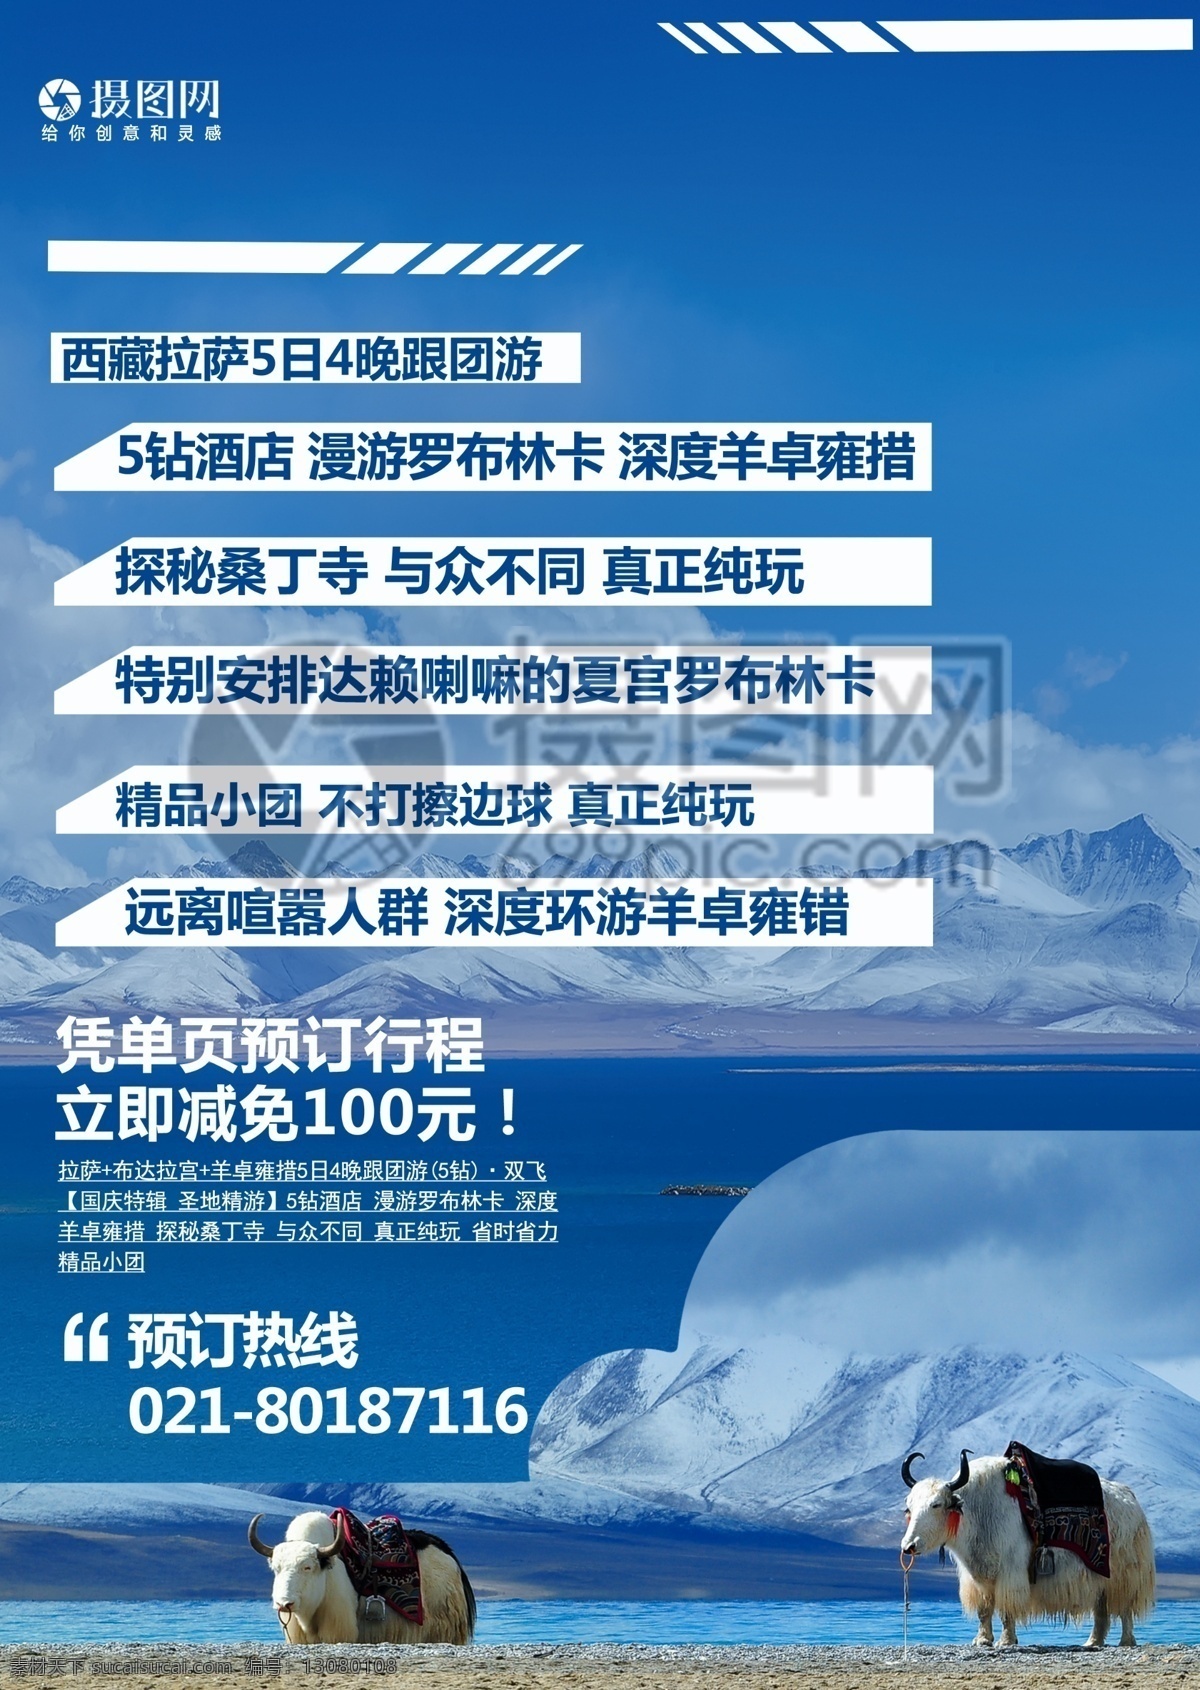 西藏旅游 宣传单 西藏 雪山 蓝色 雪景 拉萨 林芝 布达拉宫 自然 美景 风景 广阔 辽阔 旅游 度假 旅游宣传 宣传单设计 假期 游玩